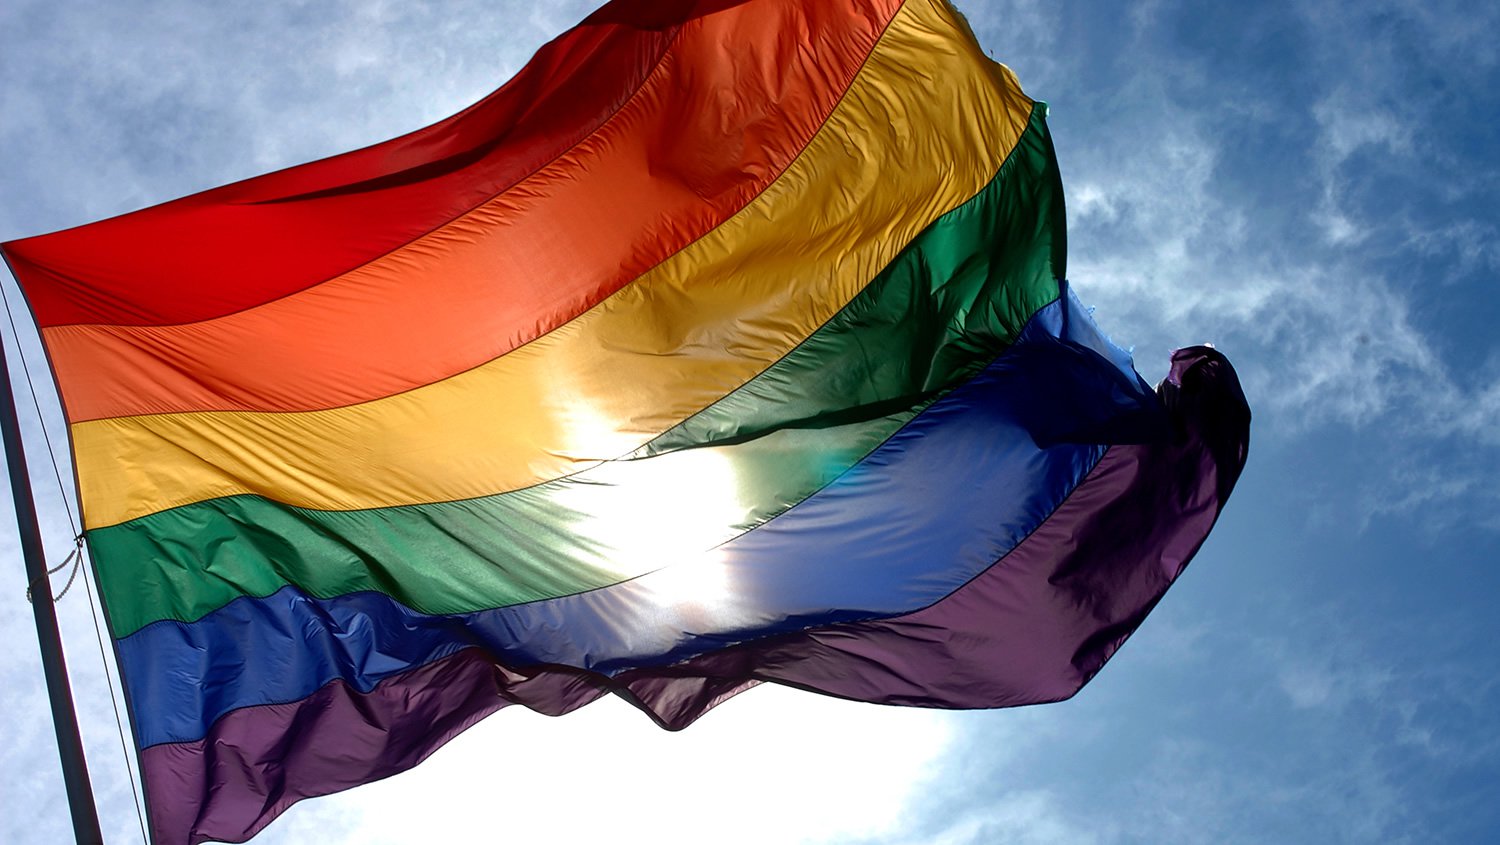 أشهر ثنائيات نجوم هوليوود المثليين بالصور